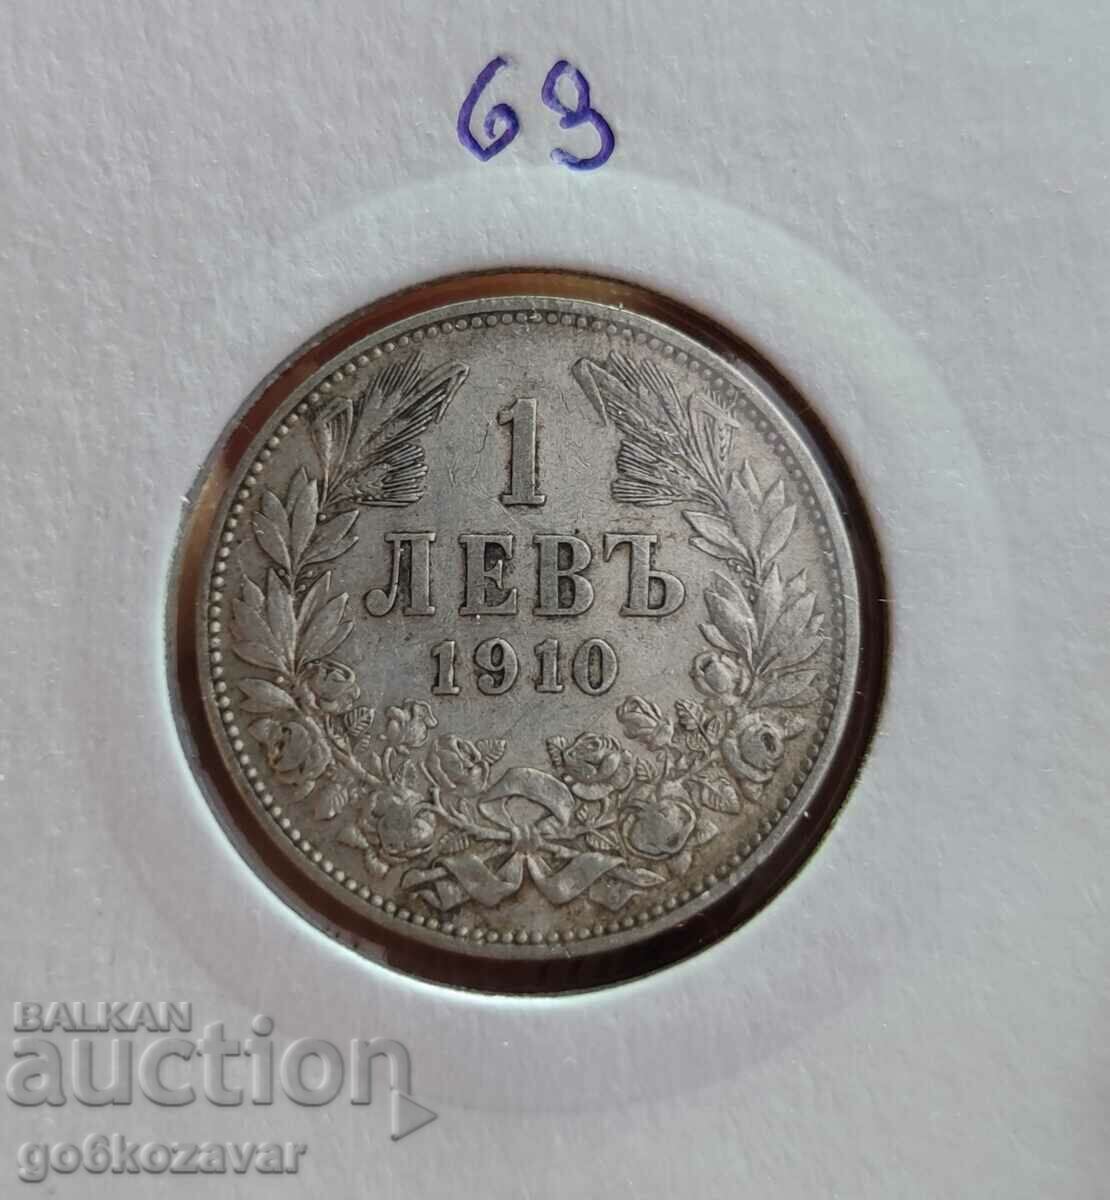 Bulgaria 1 lev 1910 silver. Collection!